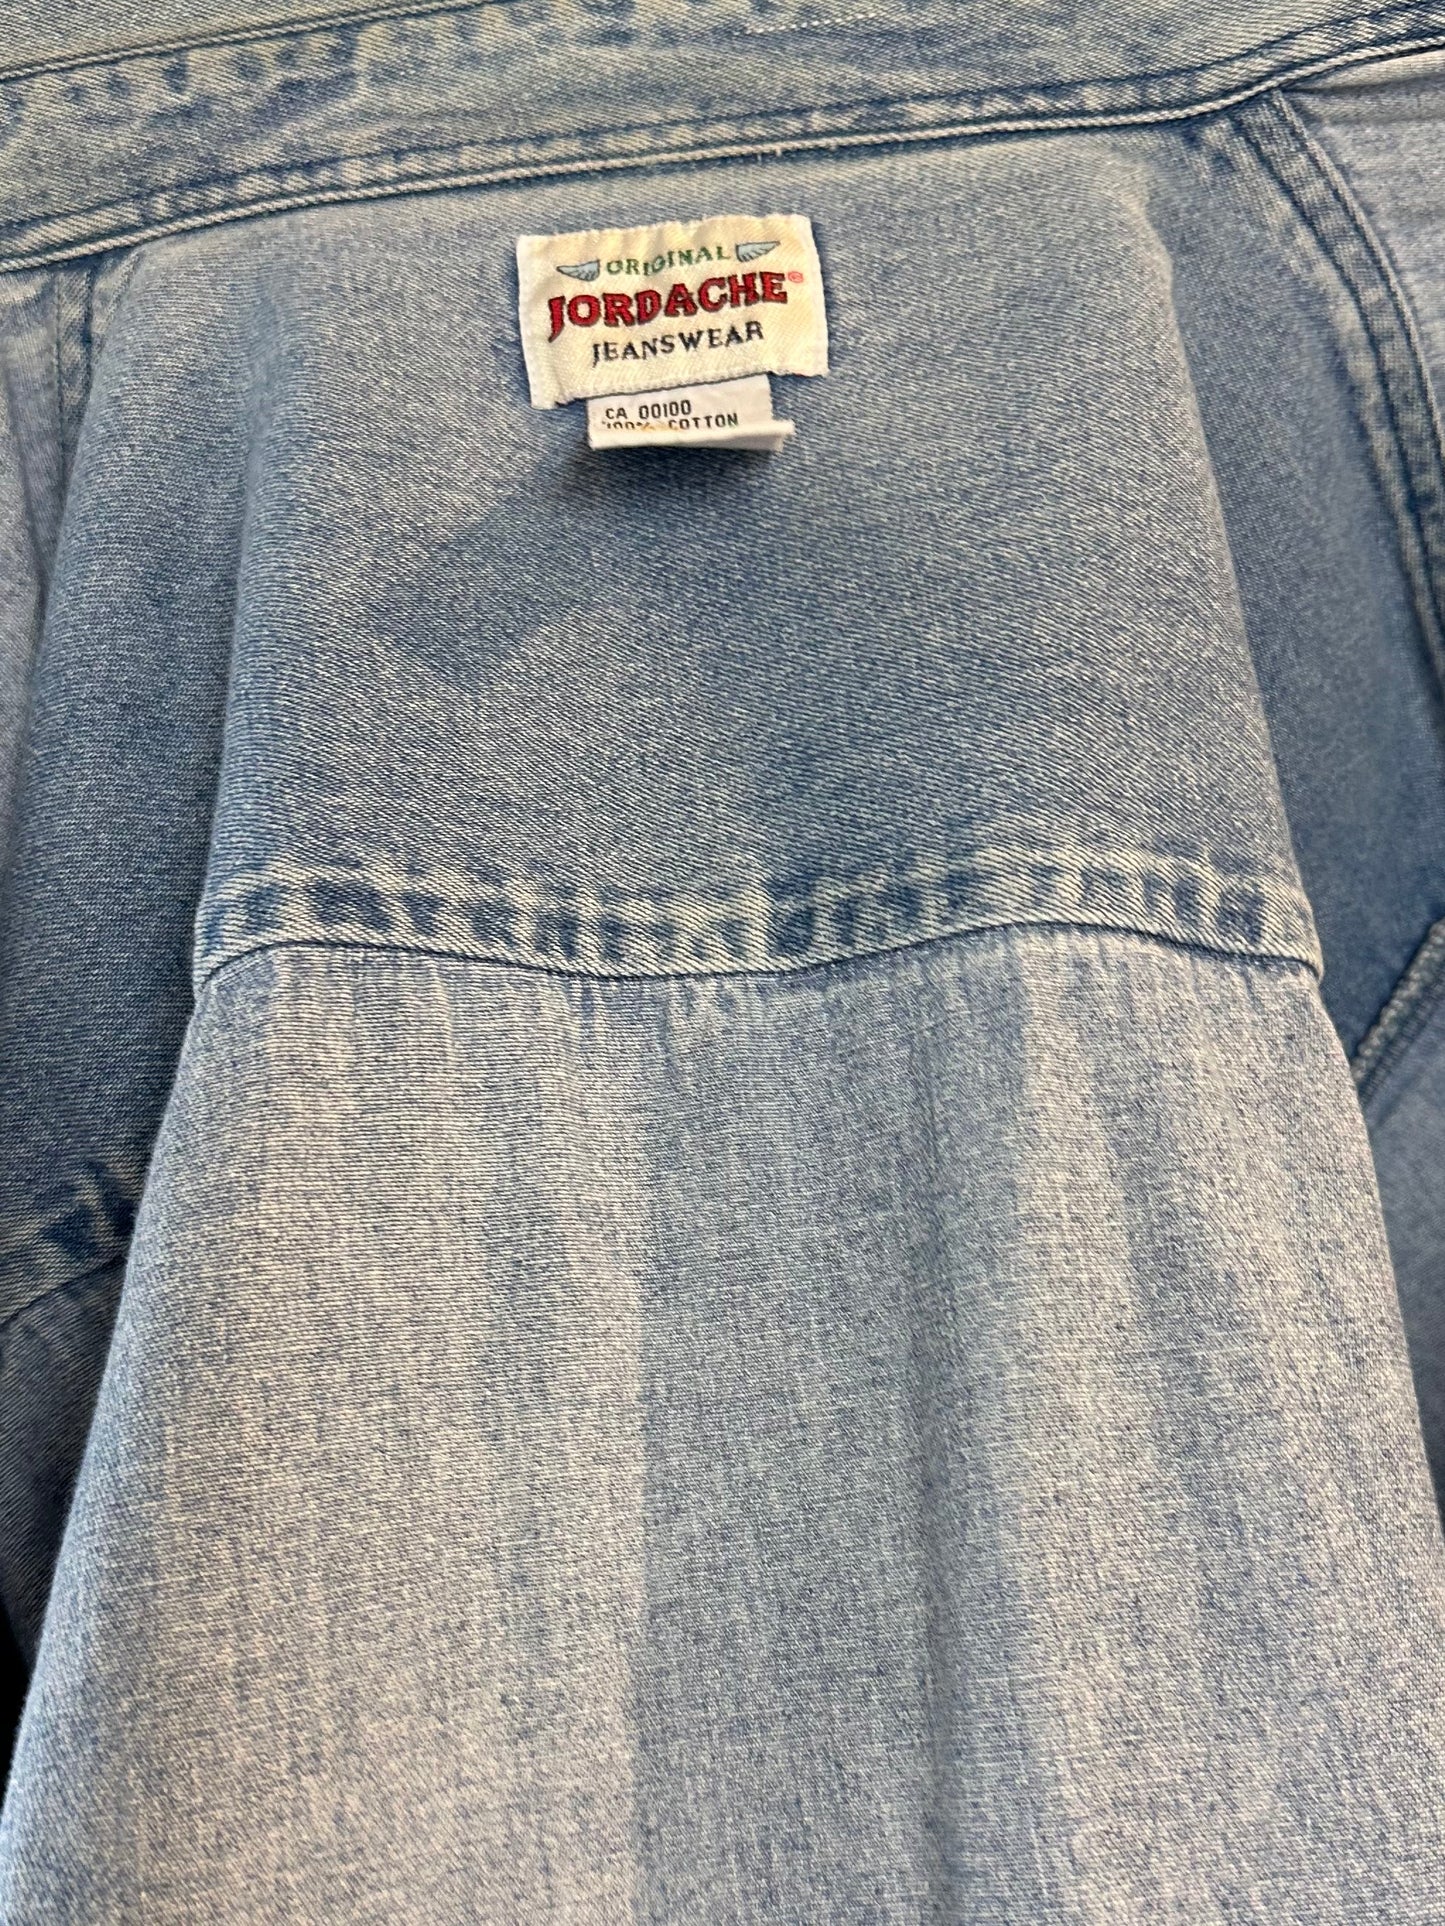 Vintage 'Jordache' Button Up Denim Shirt / Large